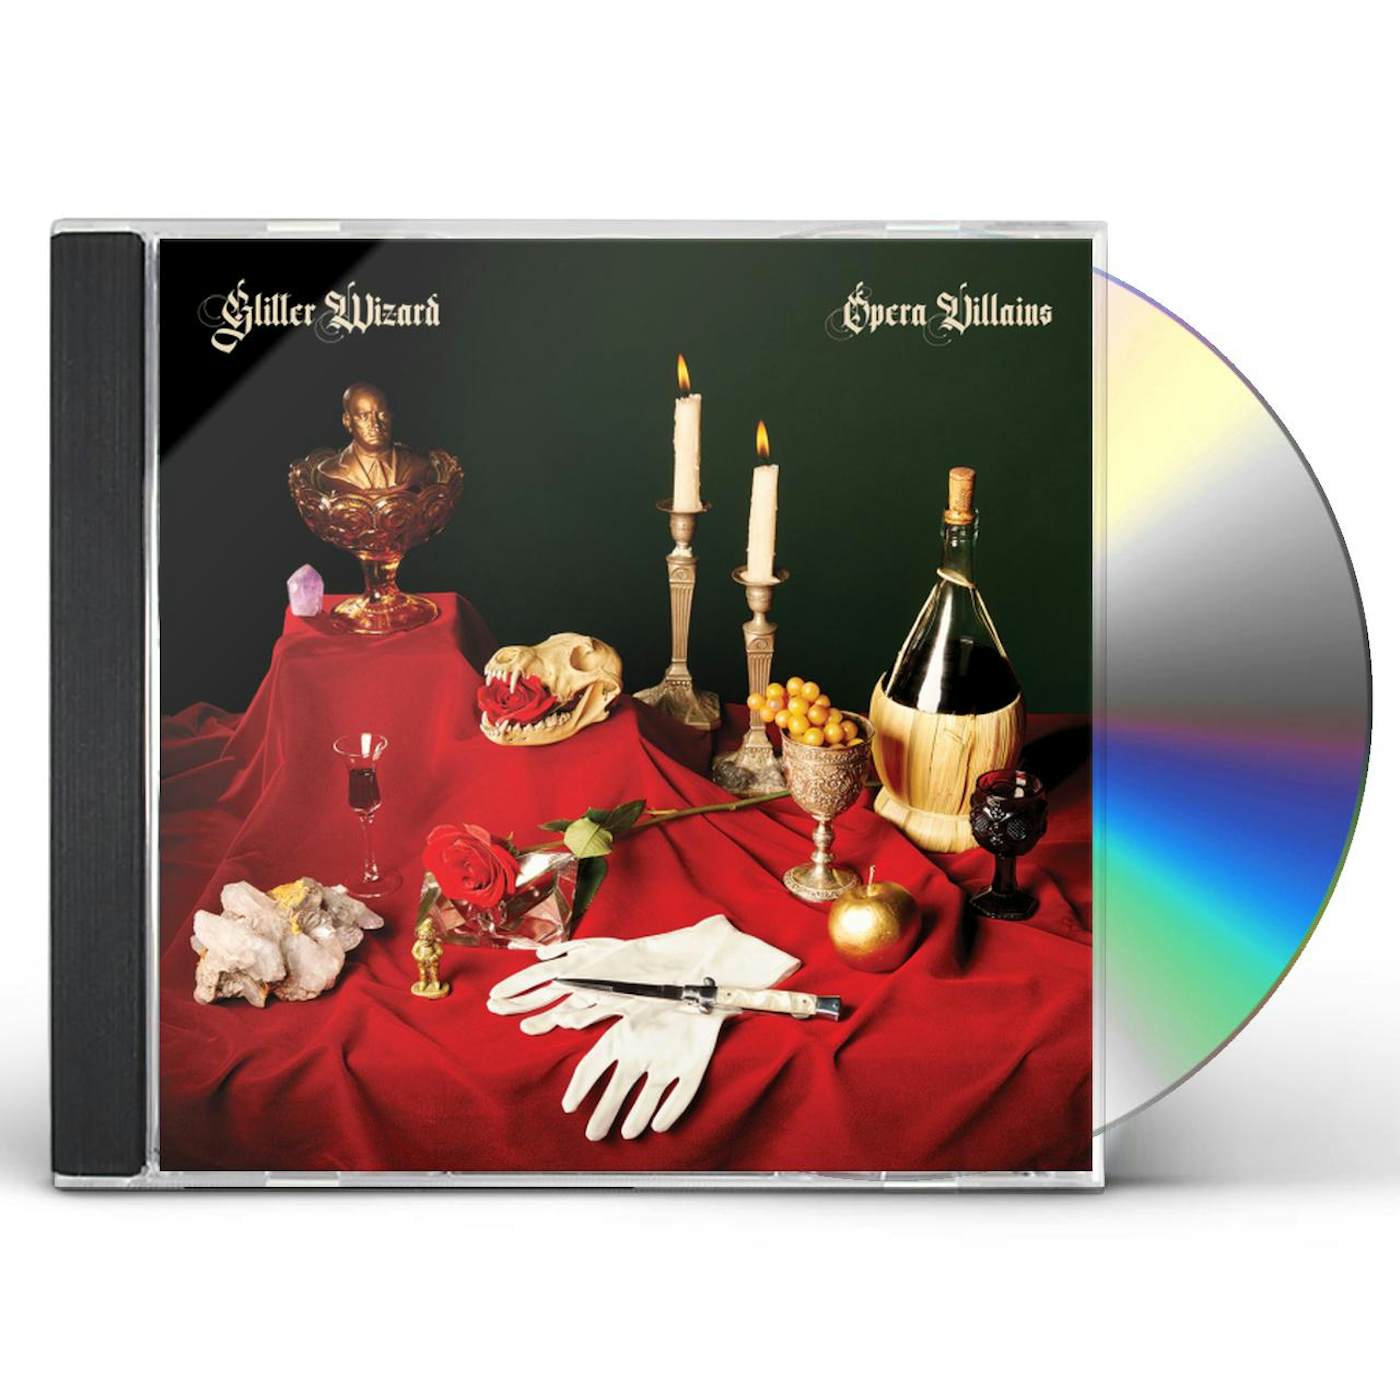 Glitter Wizard OPERA VILLAINS CD